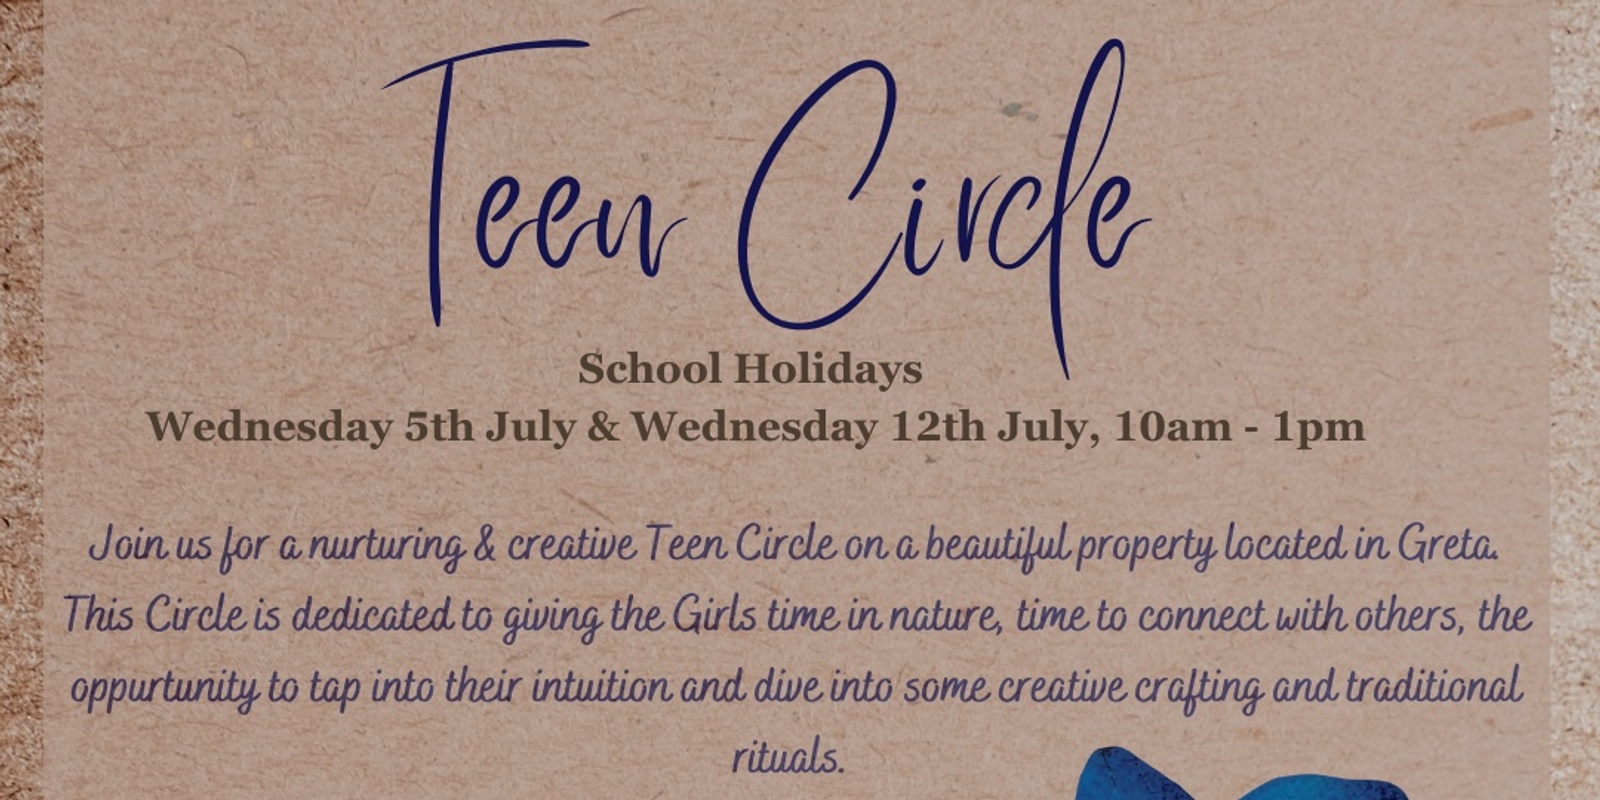 Teen Circle Winter Holidays Wed 5th July